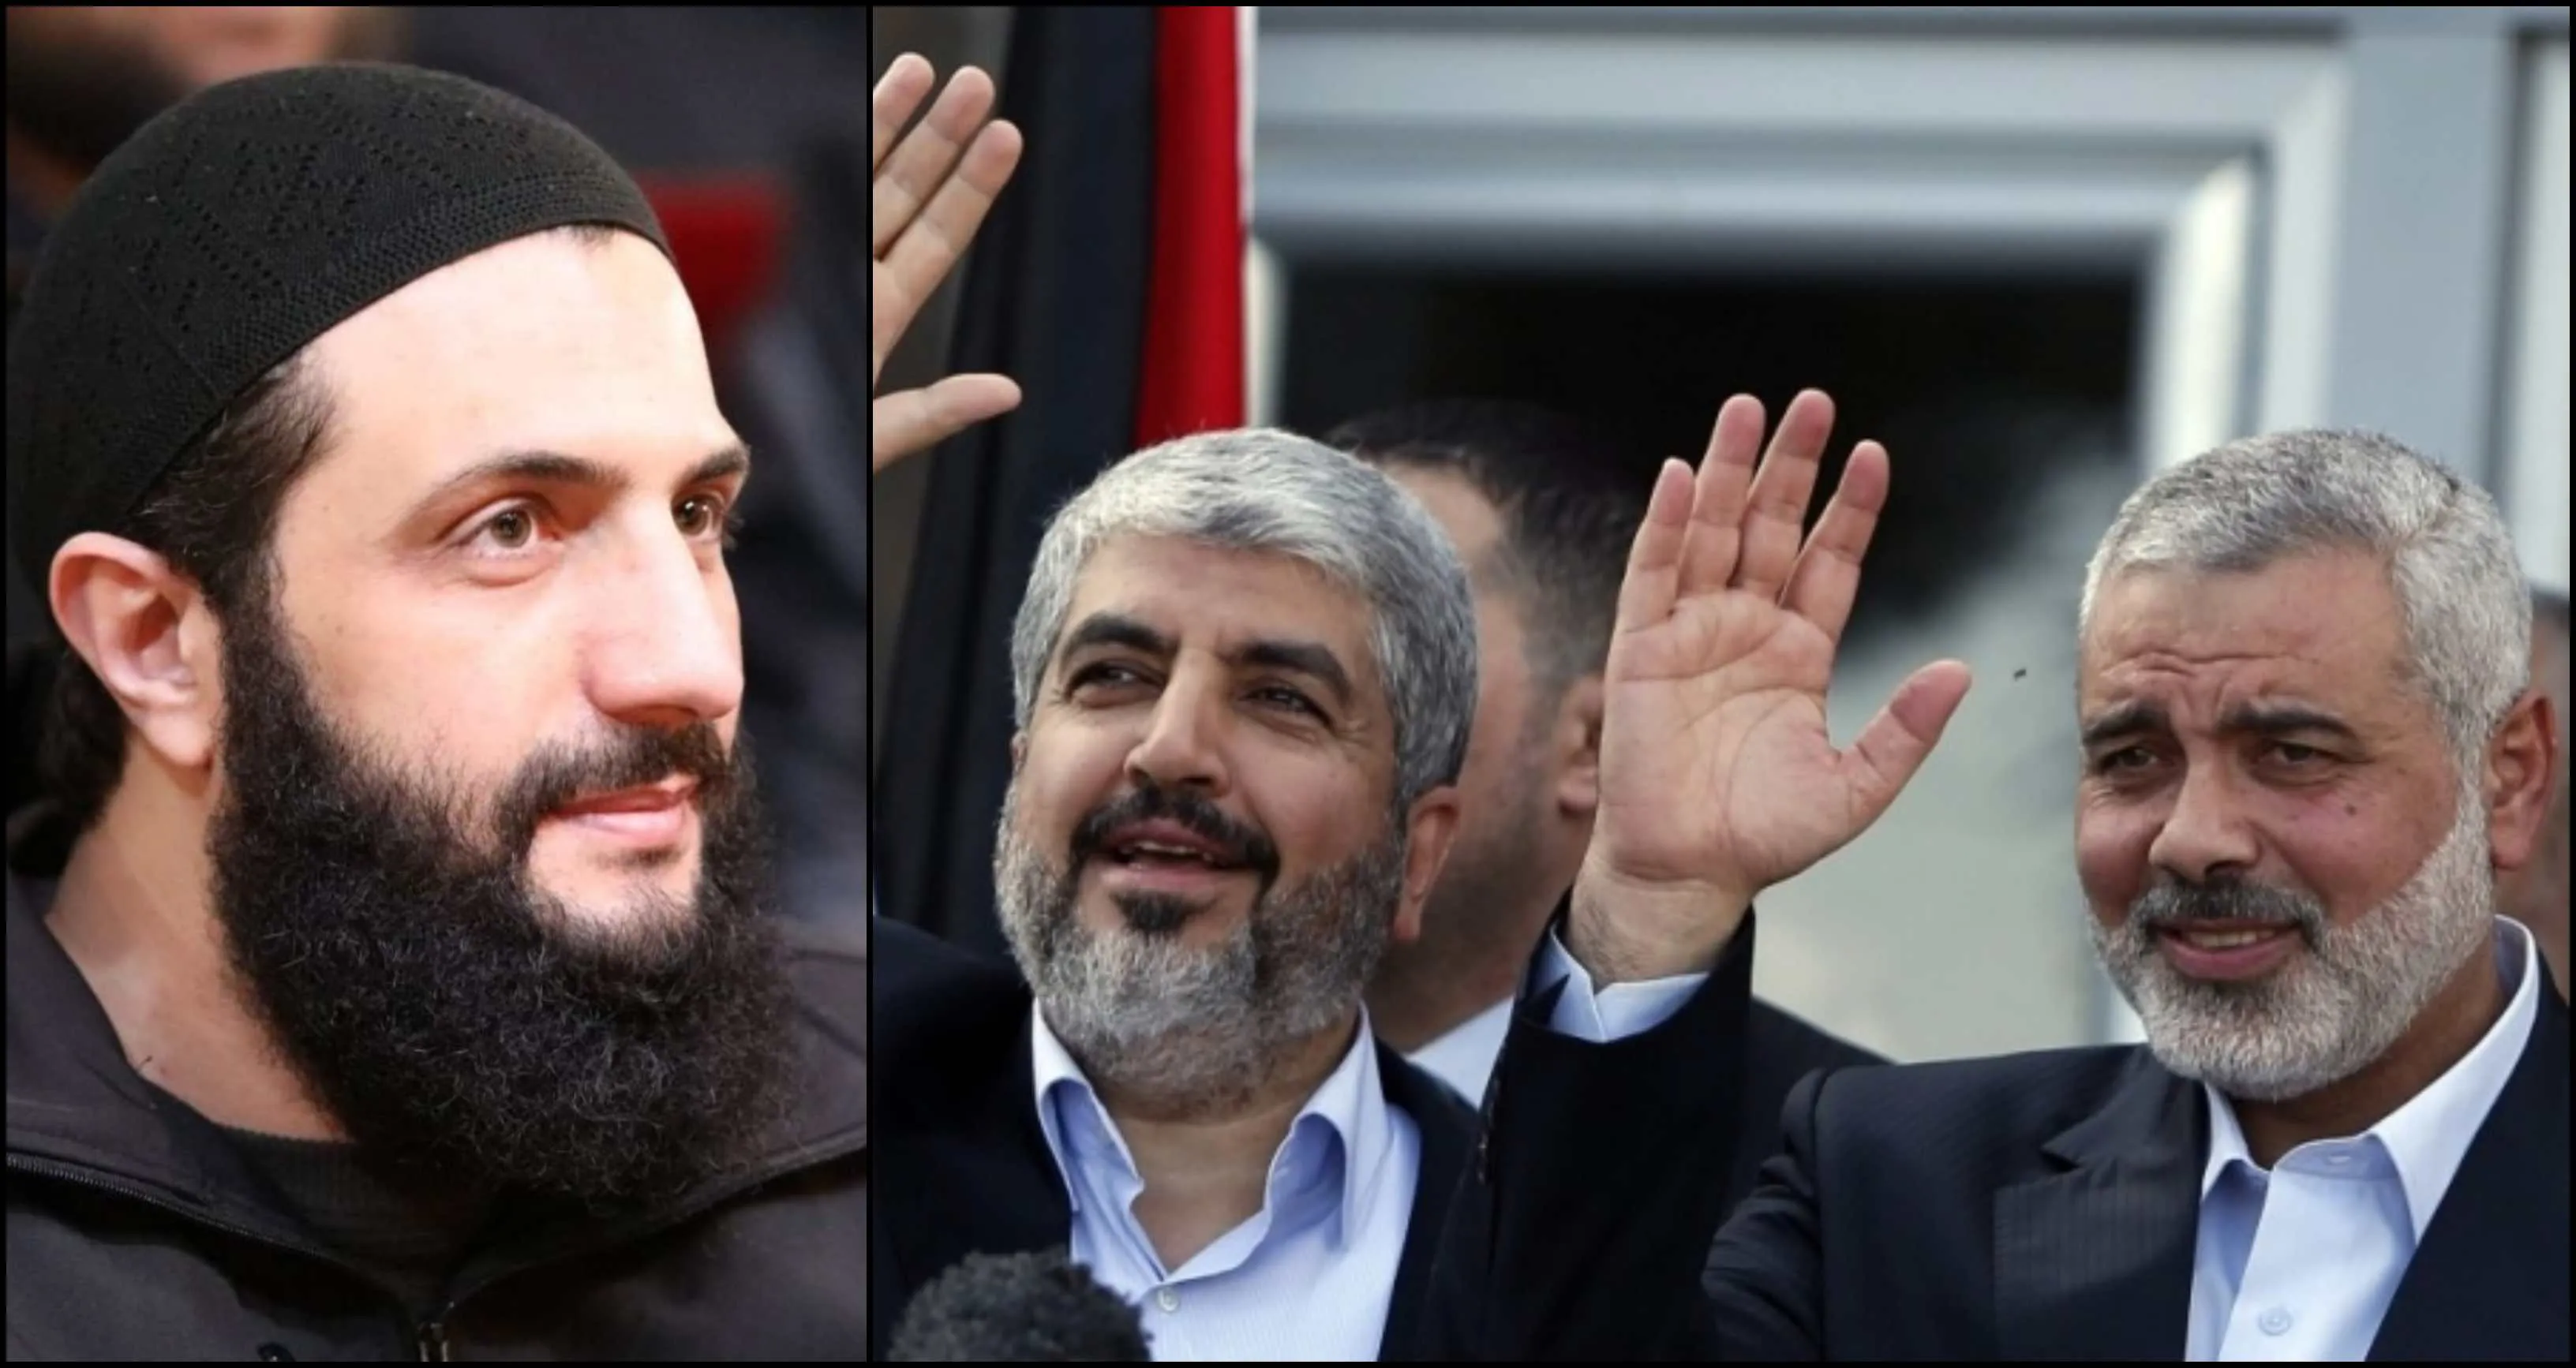 سياسية "هيئة الجولاني" توجه "دعوة مناصحة" لحركة "حماس" وتصفهم بـ "الإخوة"